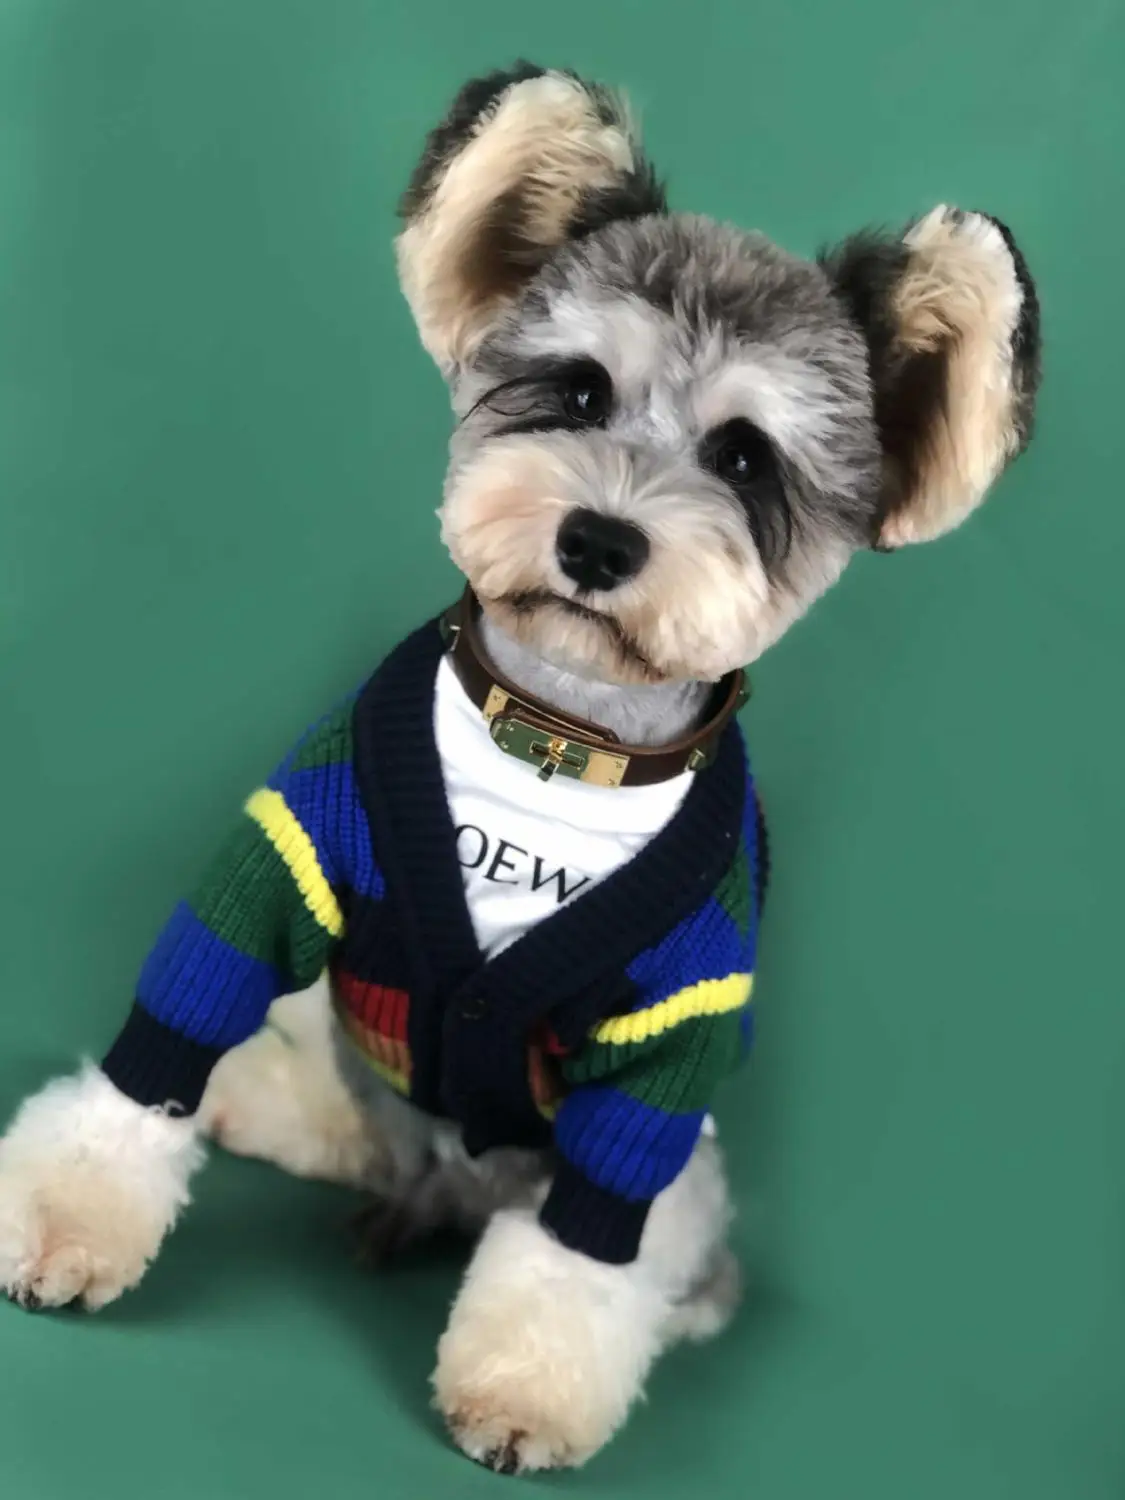 Новые яркие полосы свитер для собаки, для питомца собаки одежда цвет голубой, розовый; очень мягкая на ощупь ткань наряд для небольших